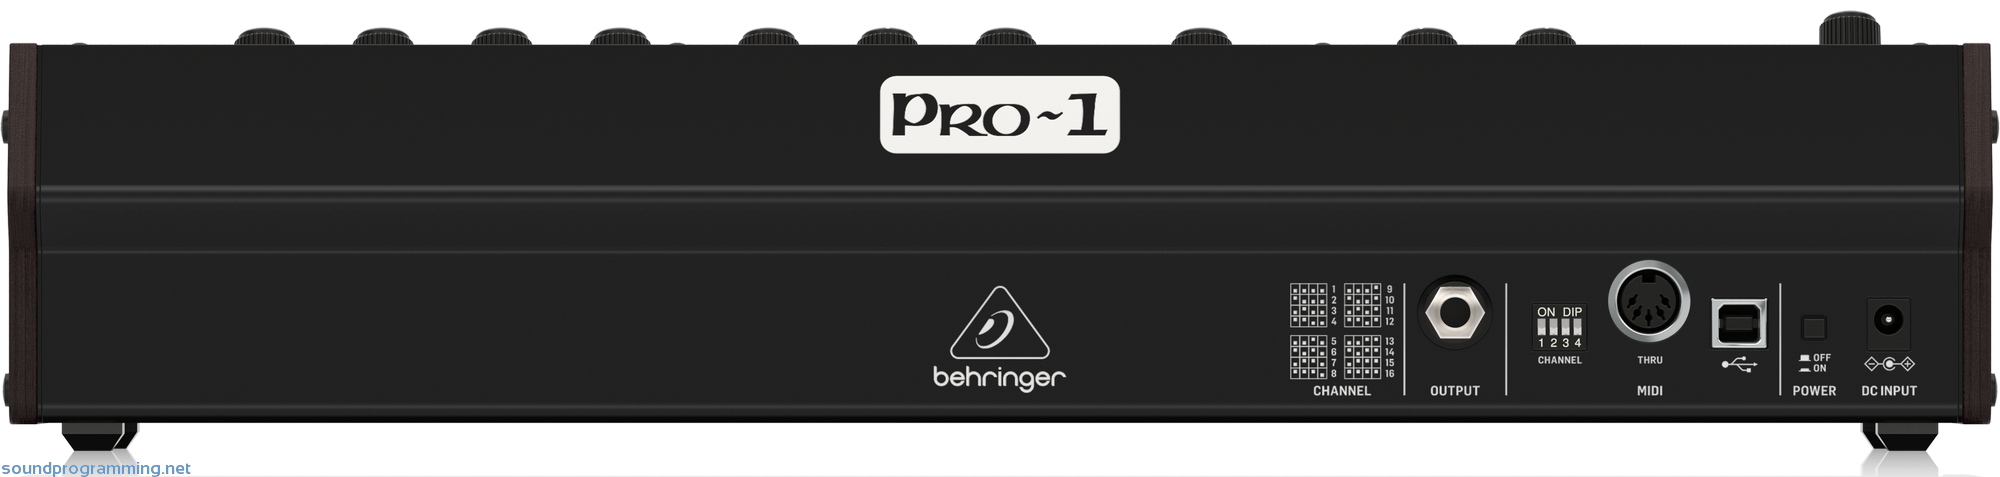 Behringer Pro-1 Back View